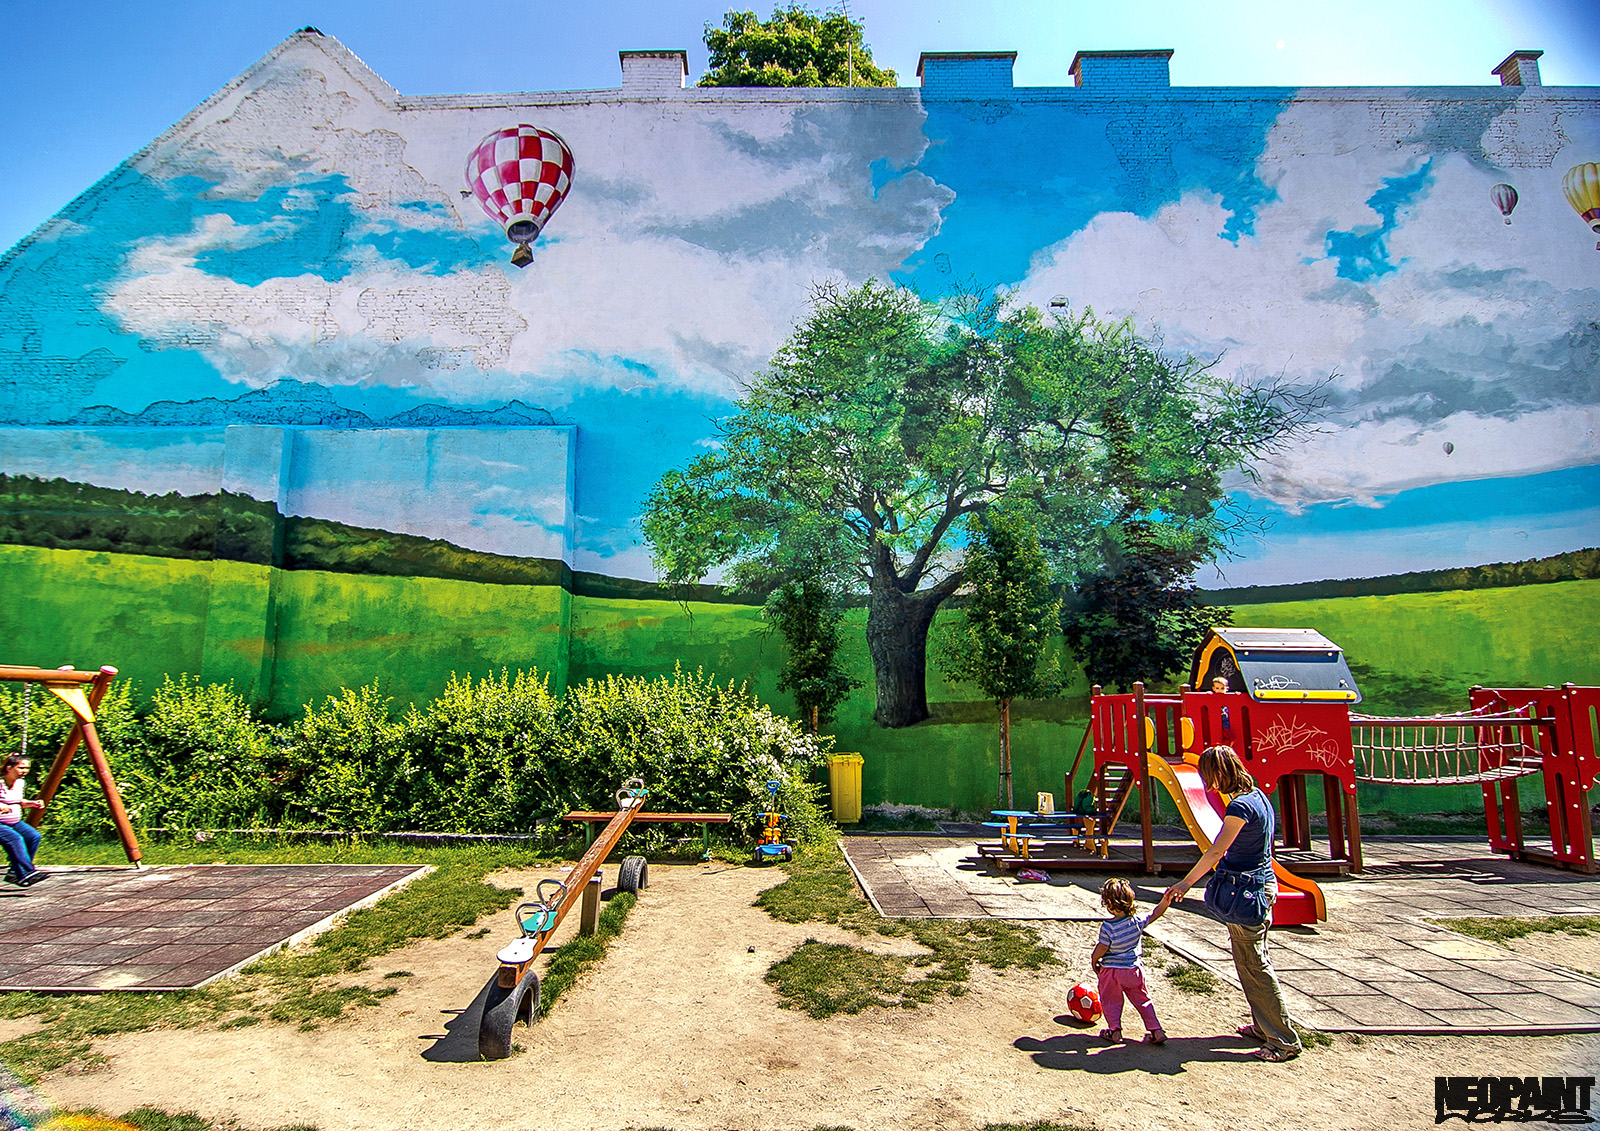 neopaint works - tájkép tűzfalra festve - király utca - tűzfalfestmény